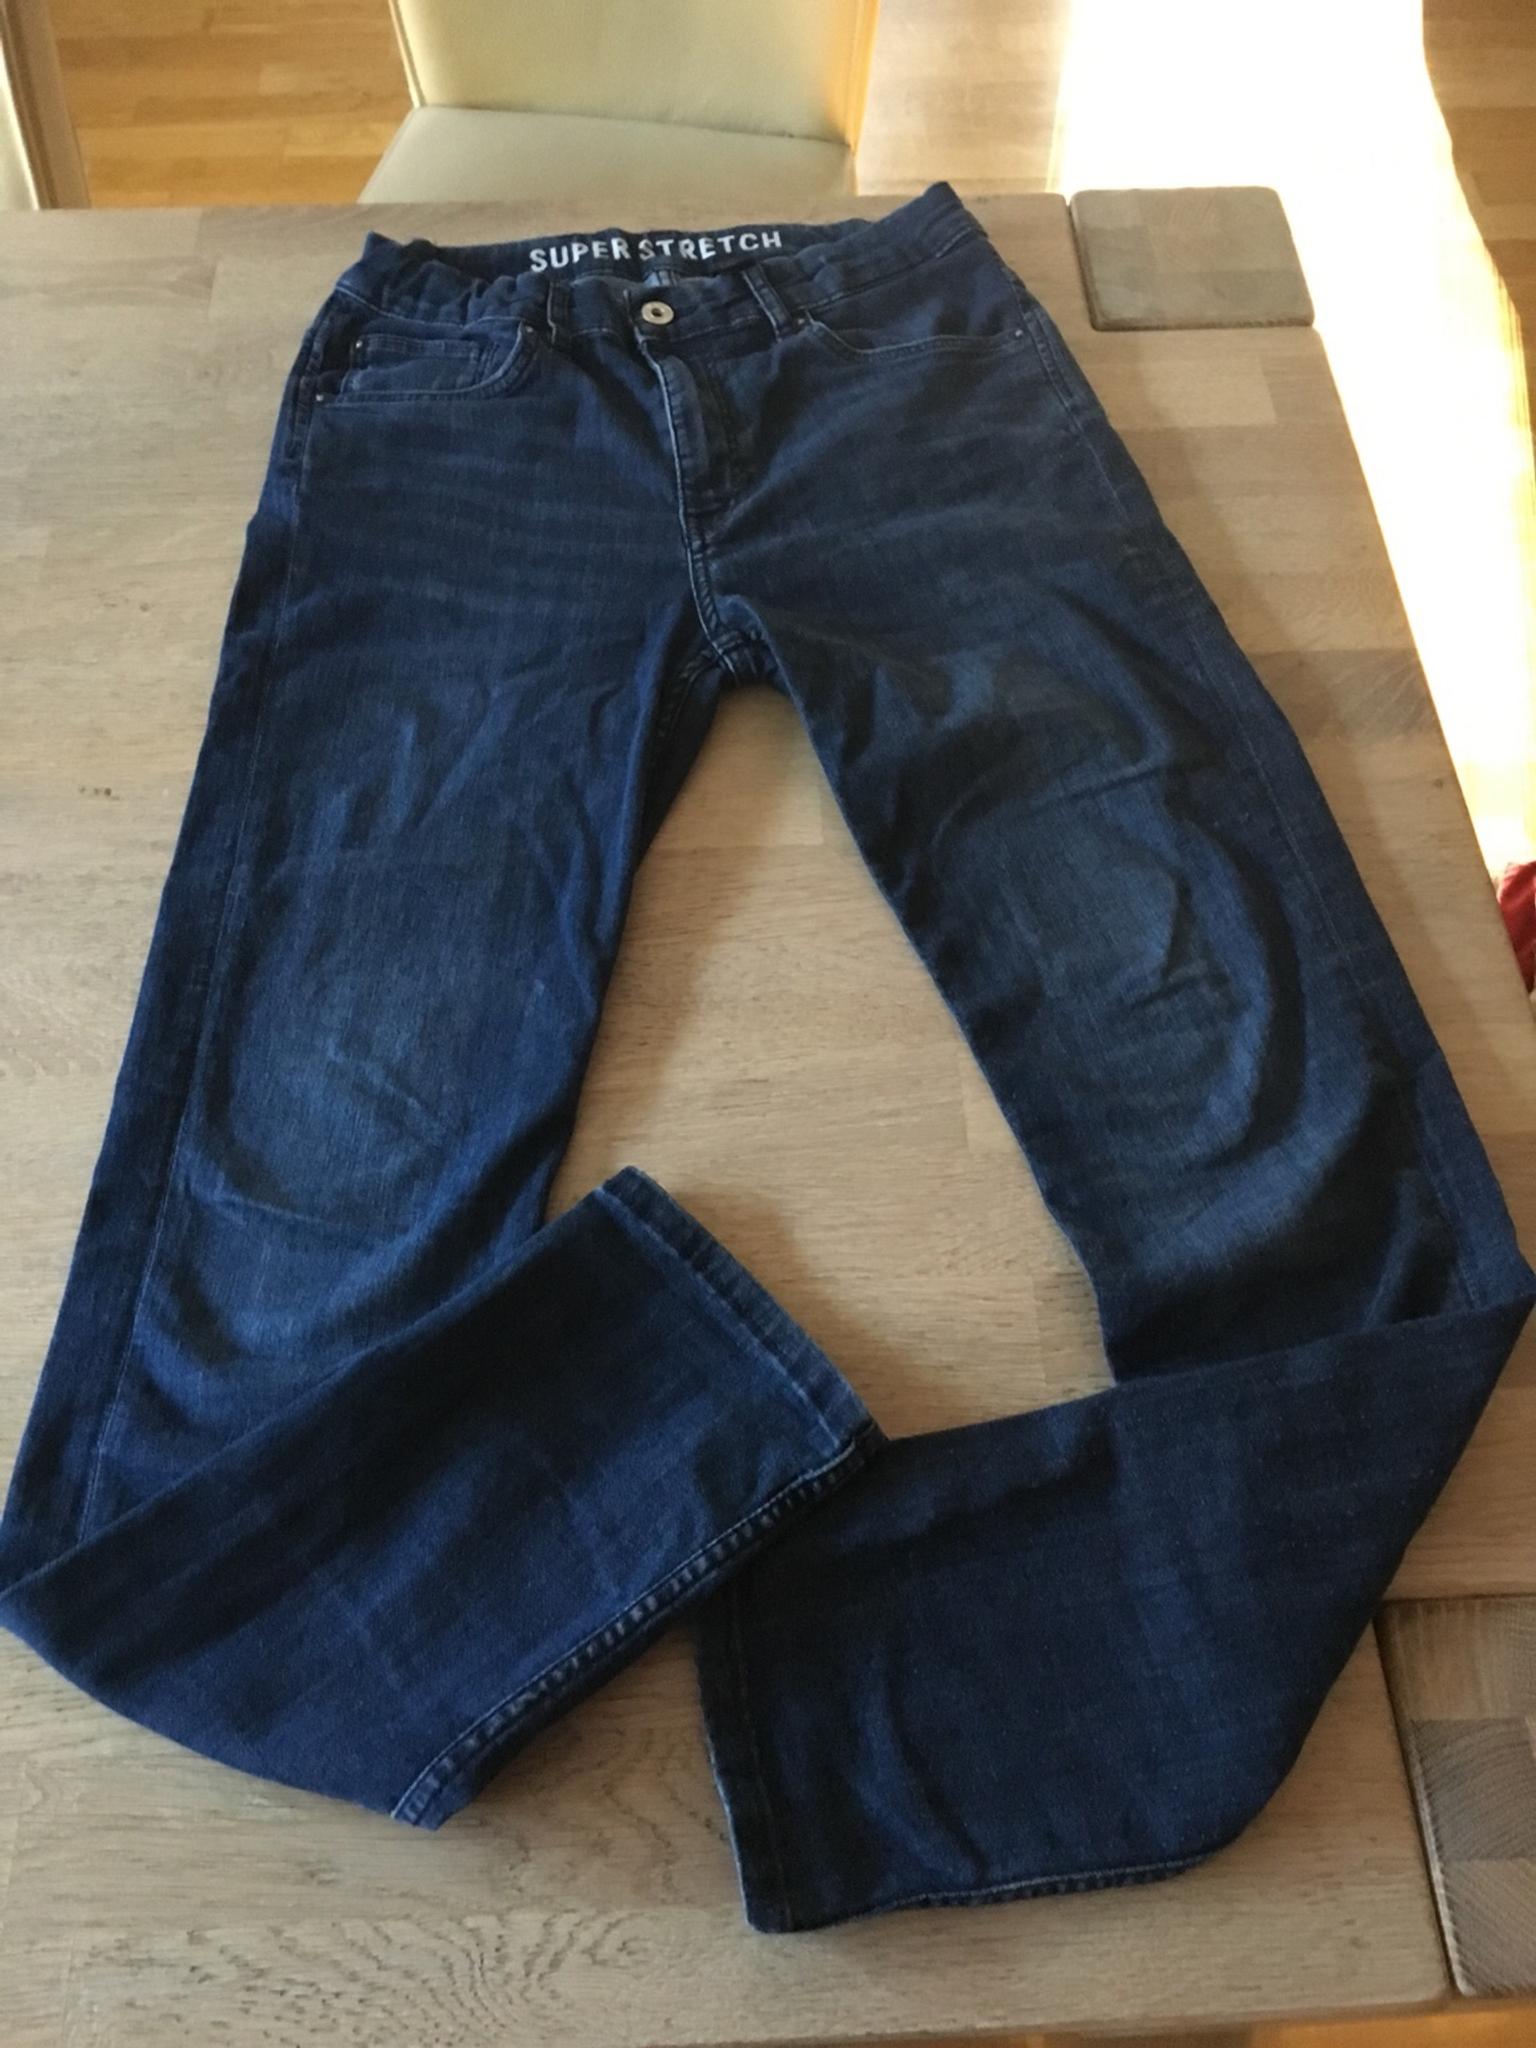 Jungen Bekleidung Hosen Jeans DE 164 H&M Jungen Jeans Gr 